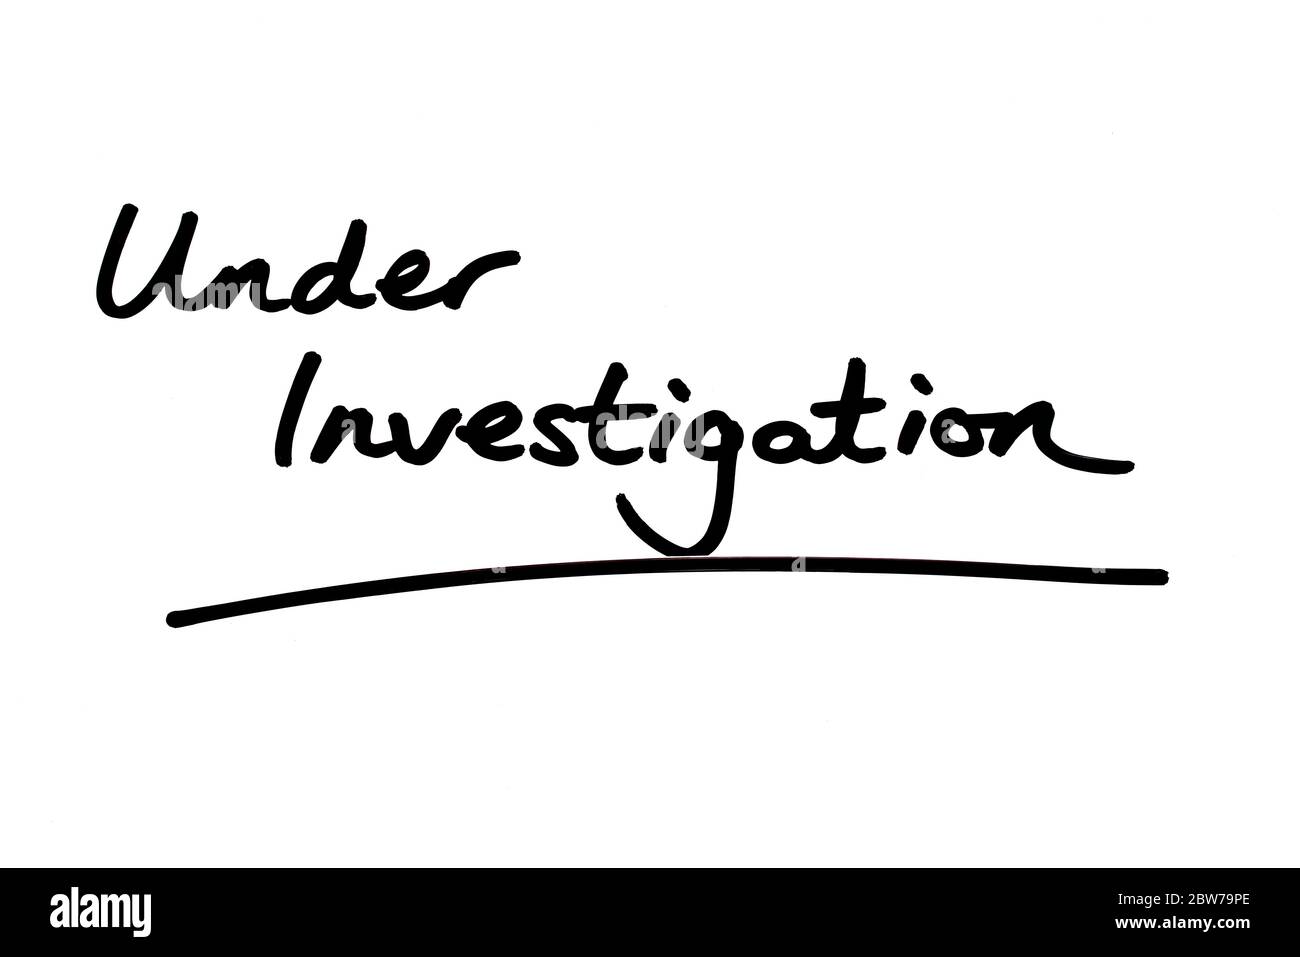 Under Investigation handwritten on a white background. Stock Photo